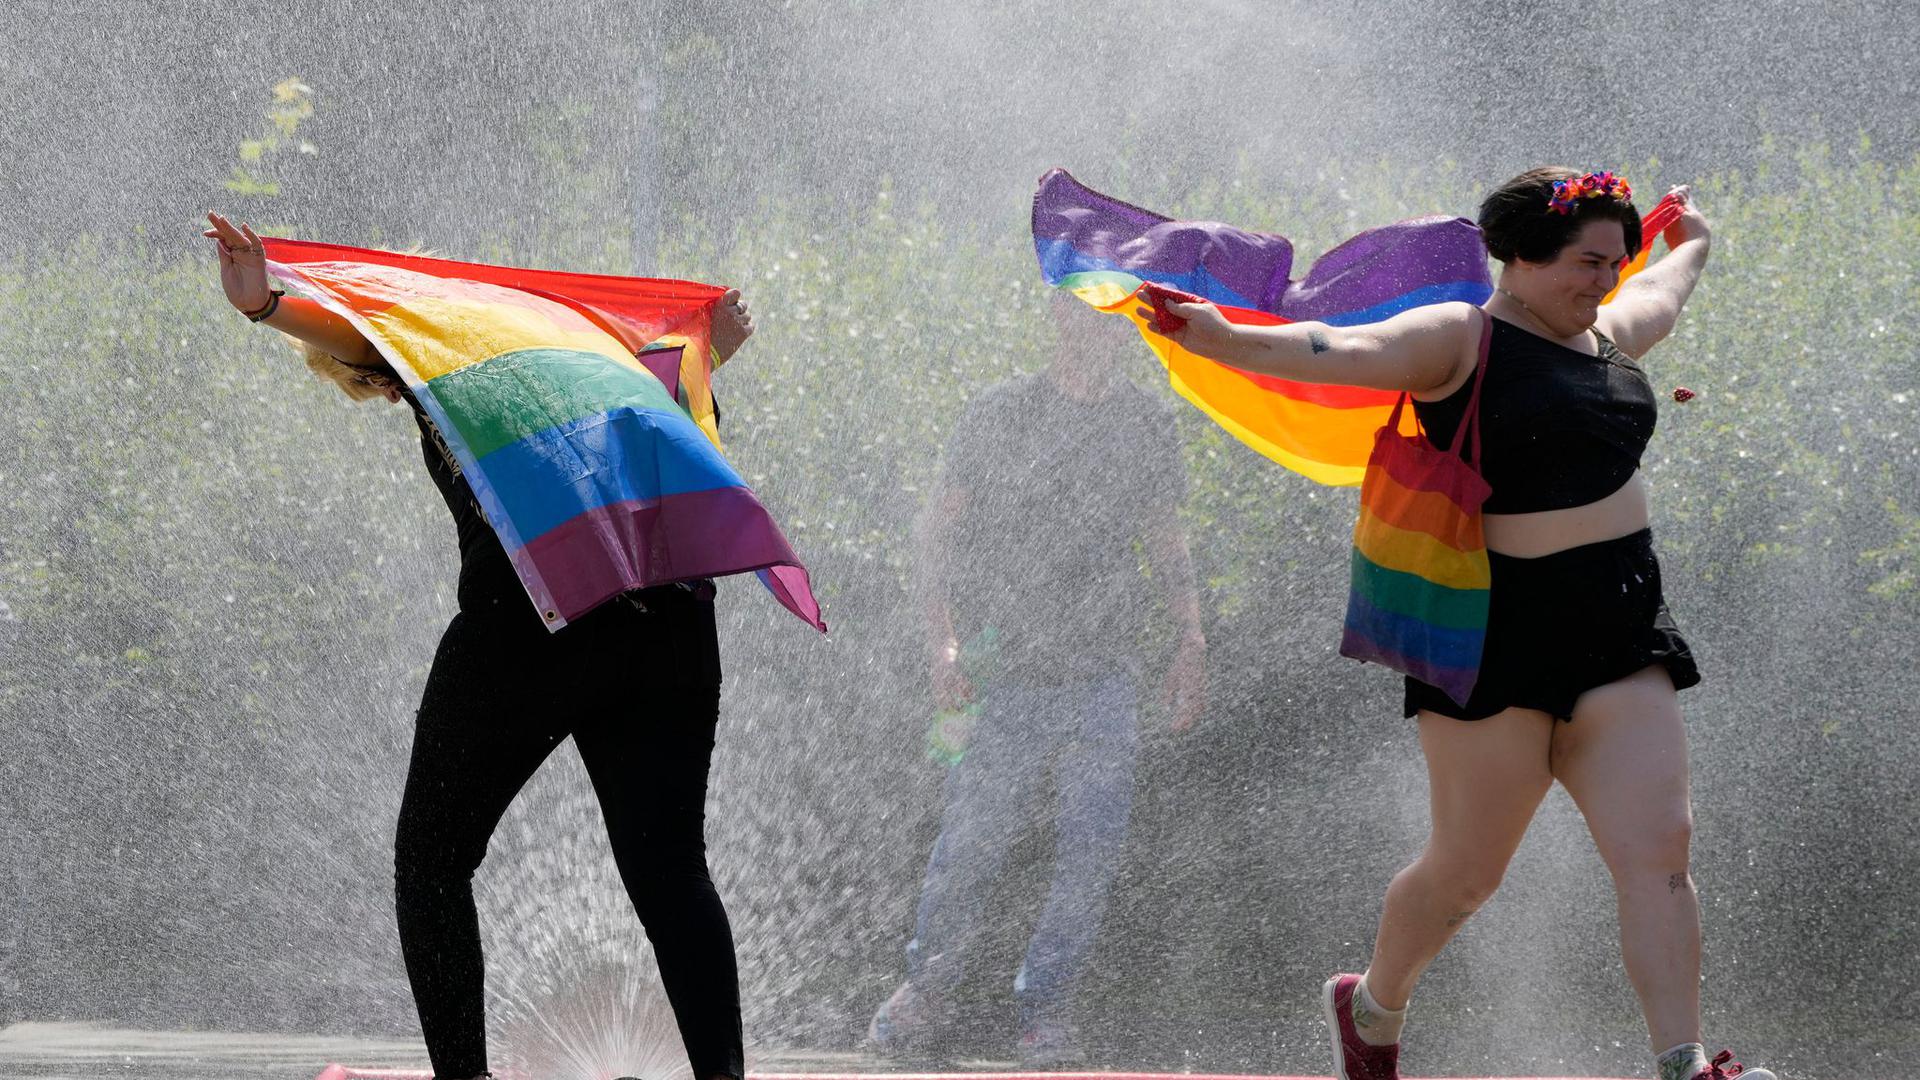 Der Brief der Staats- und Regierungschefs erwähnt als Anlass den International Lesbian Gay Bisexual and Transgender Pride Day am 28. Juni.